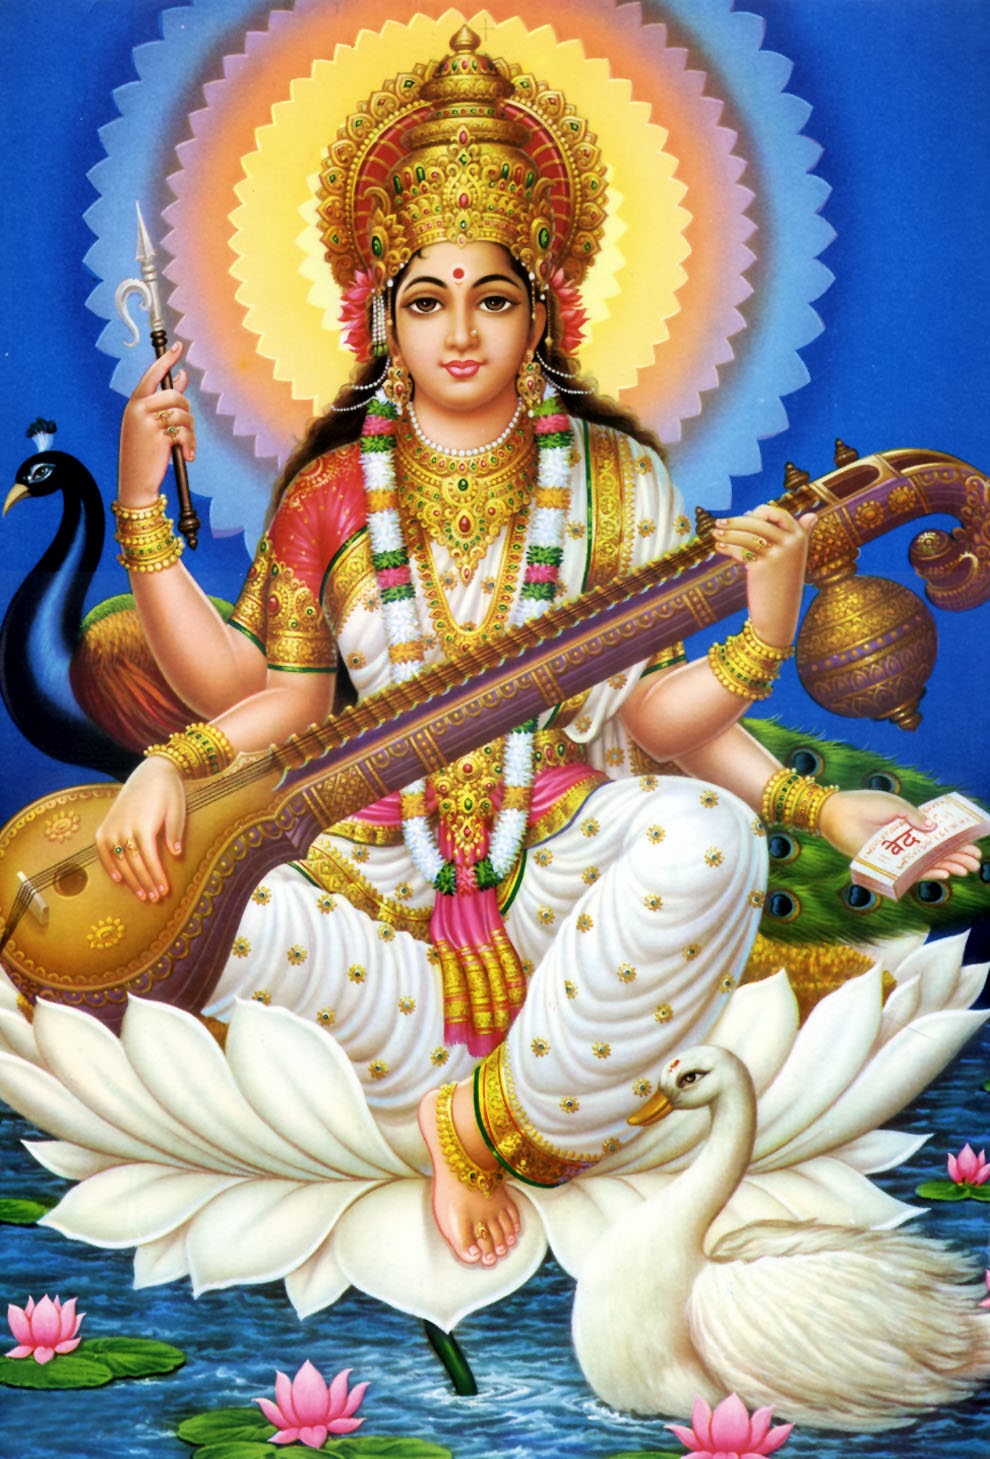 fond d'écran saraswati,instruments à cordes pincées,instrument de musique,personnage fictif,gourou,mythologie